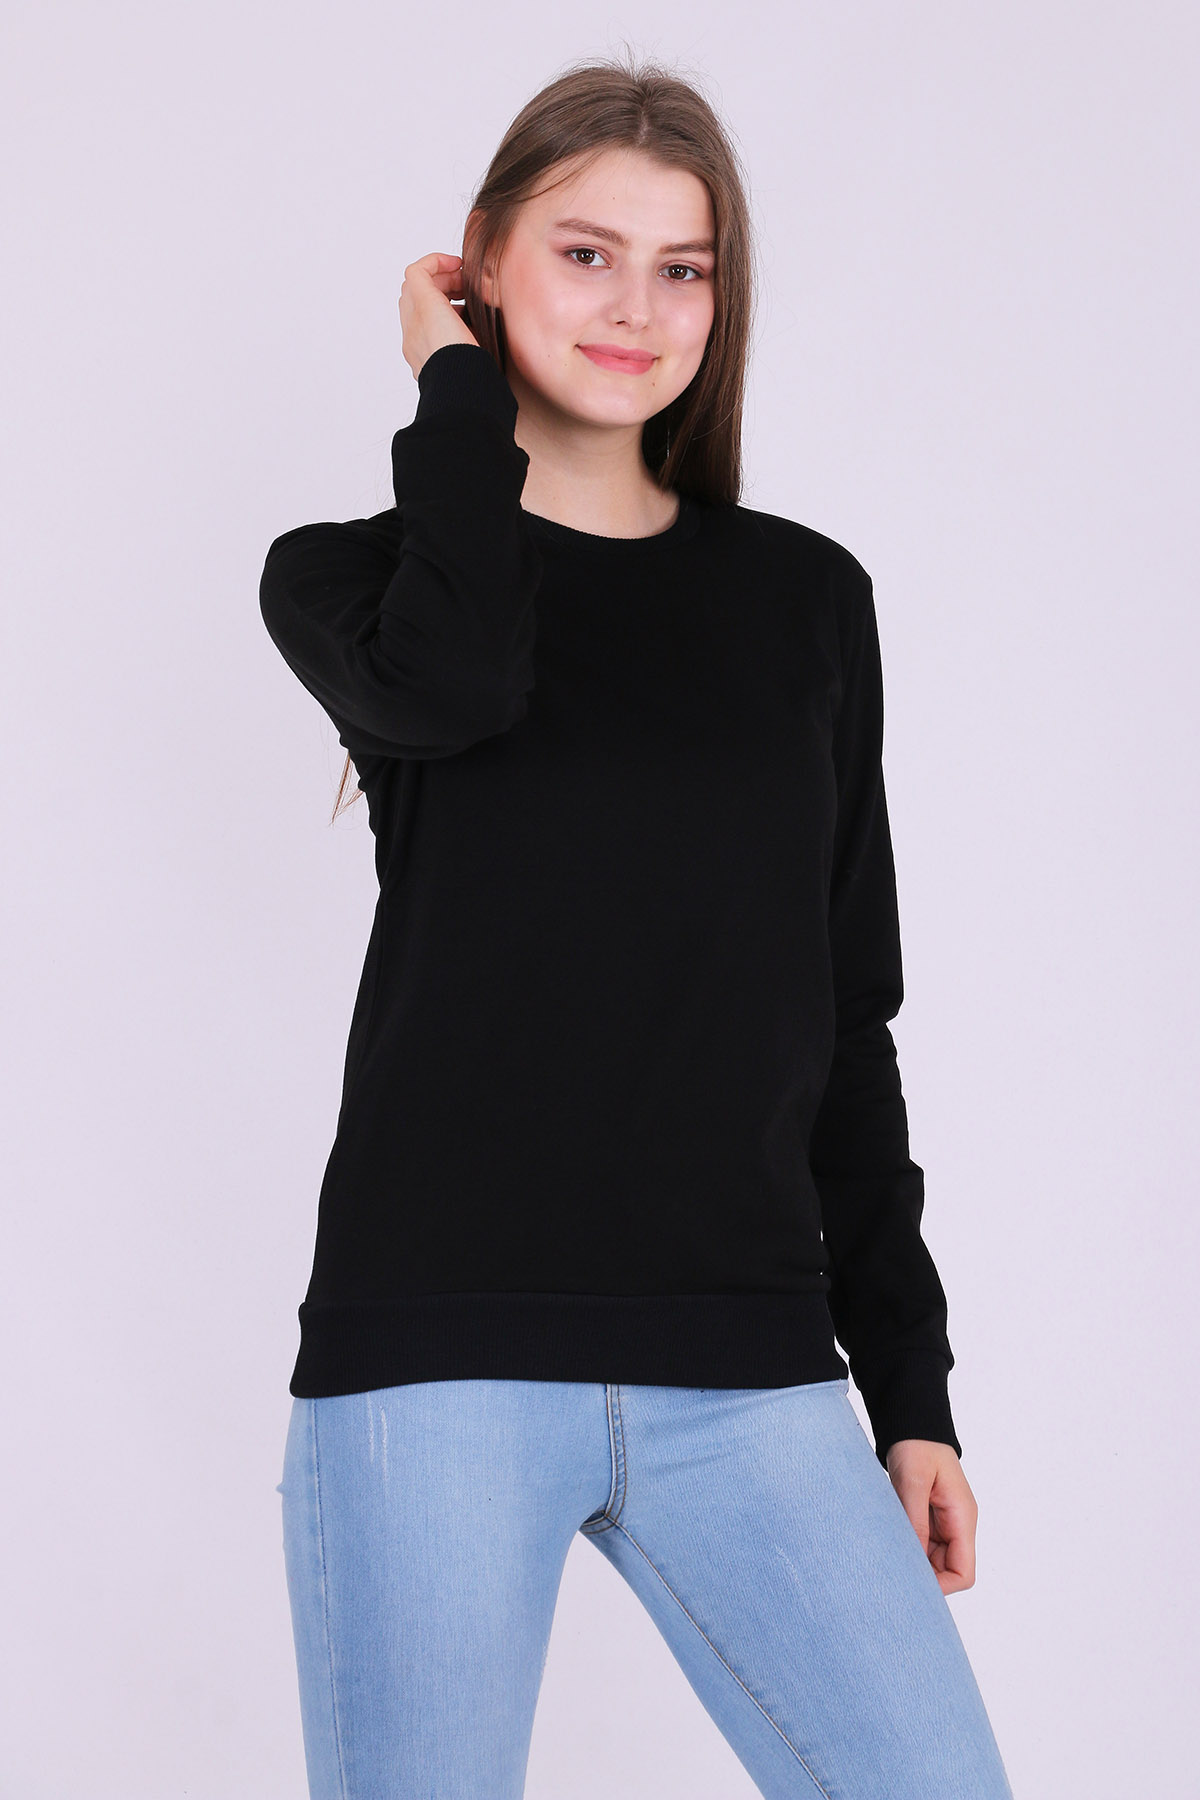 Siyah Basic Kadın 2 iplik Sweatshirt